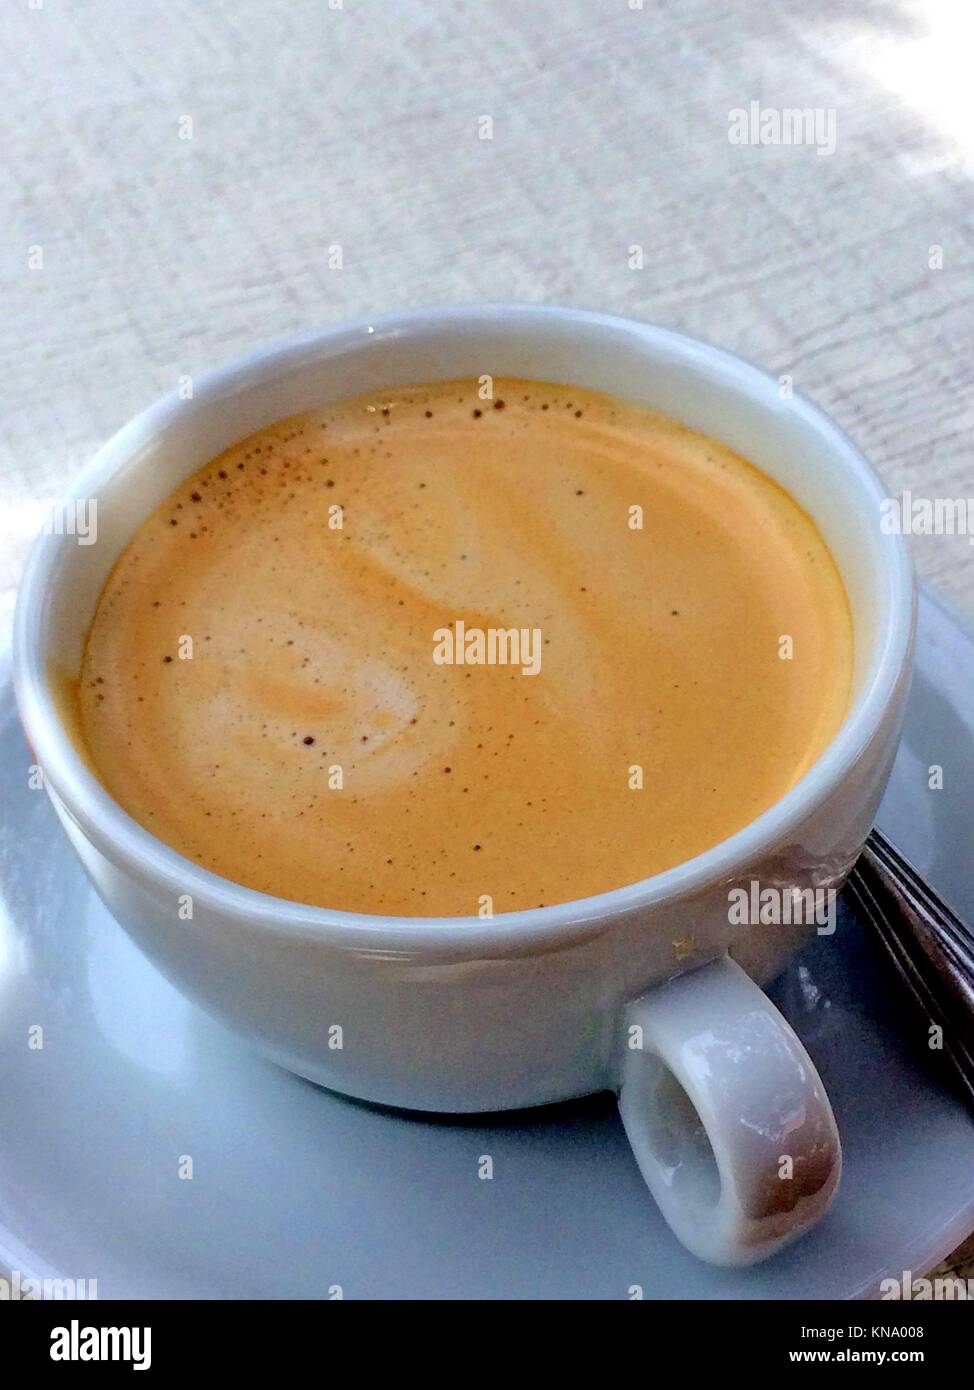 Cafe au lait. Stock Photo